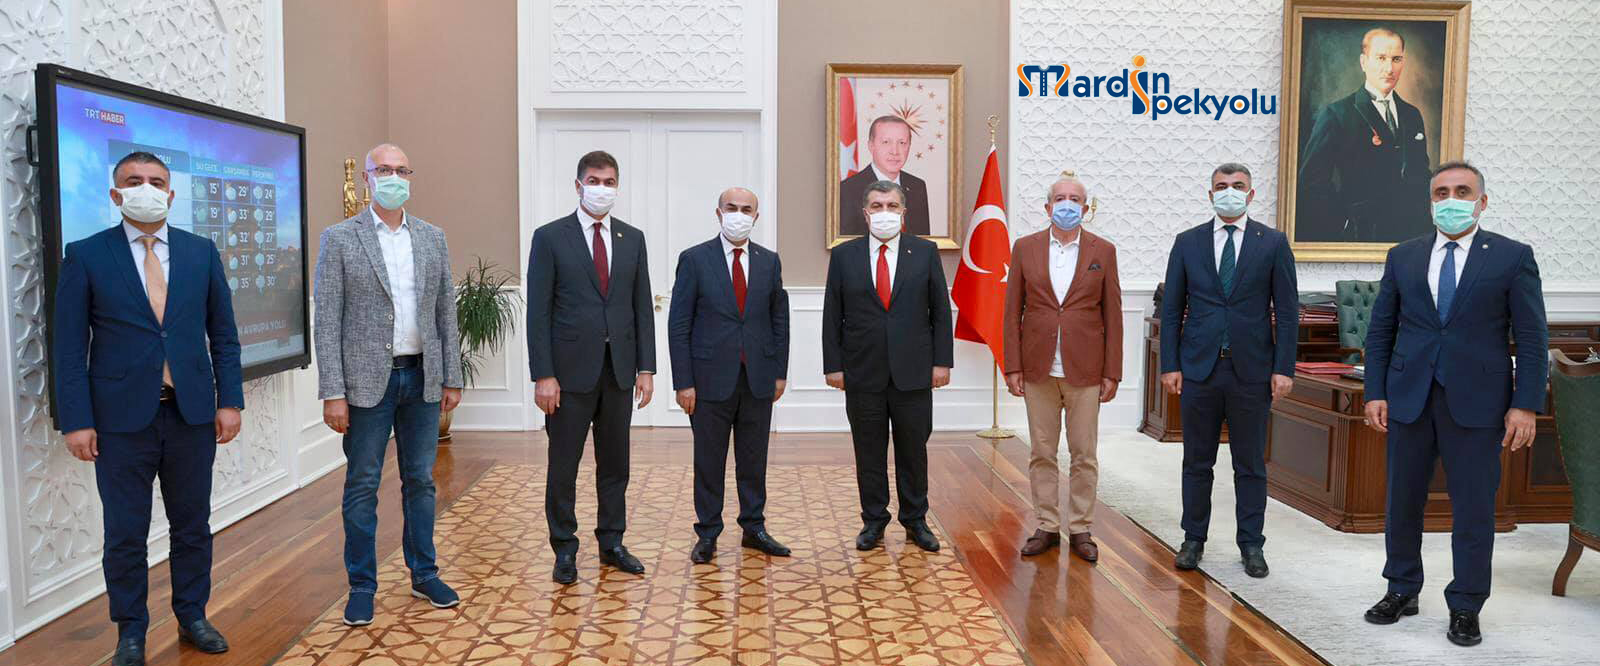 Mardin’deki bürokratlar ile siyasilerden